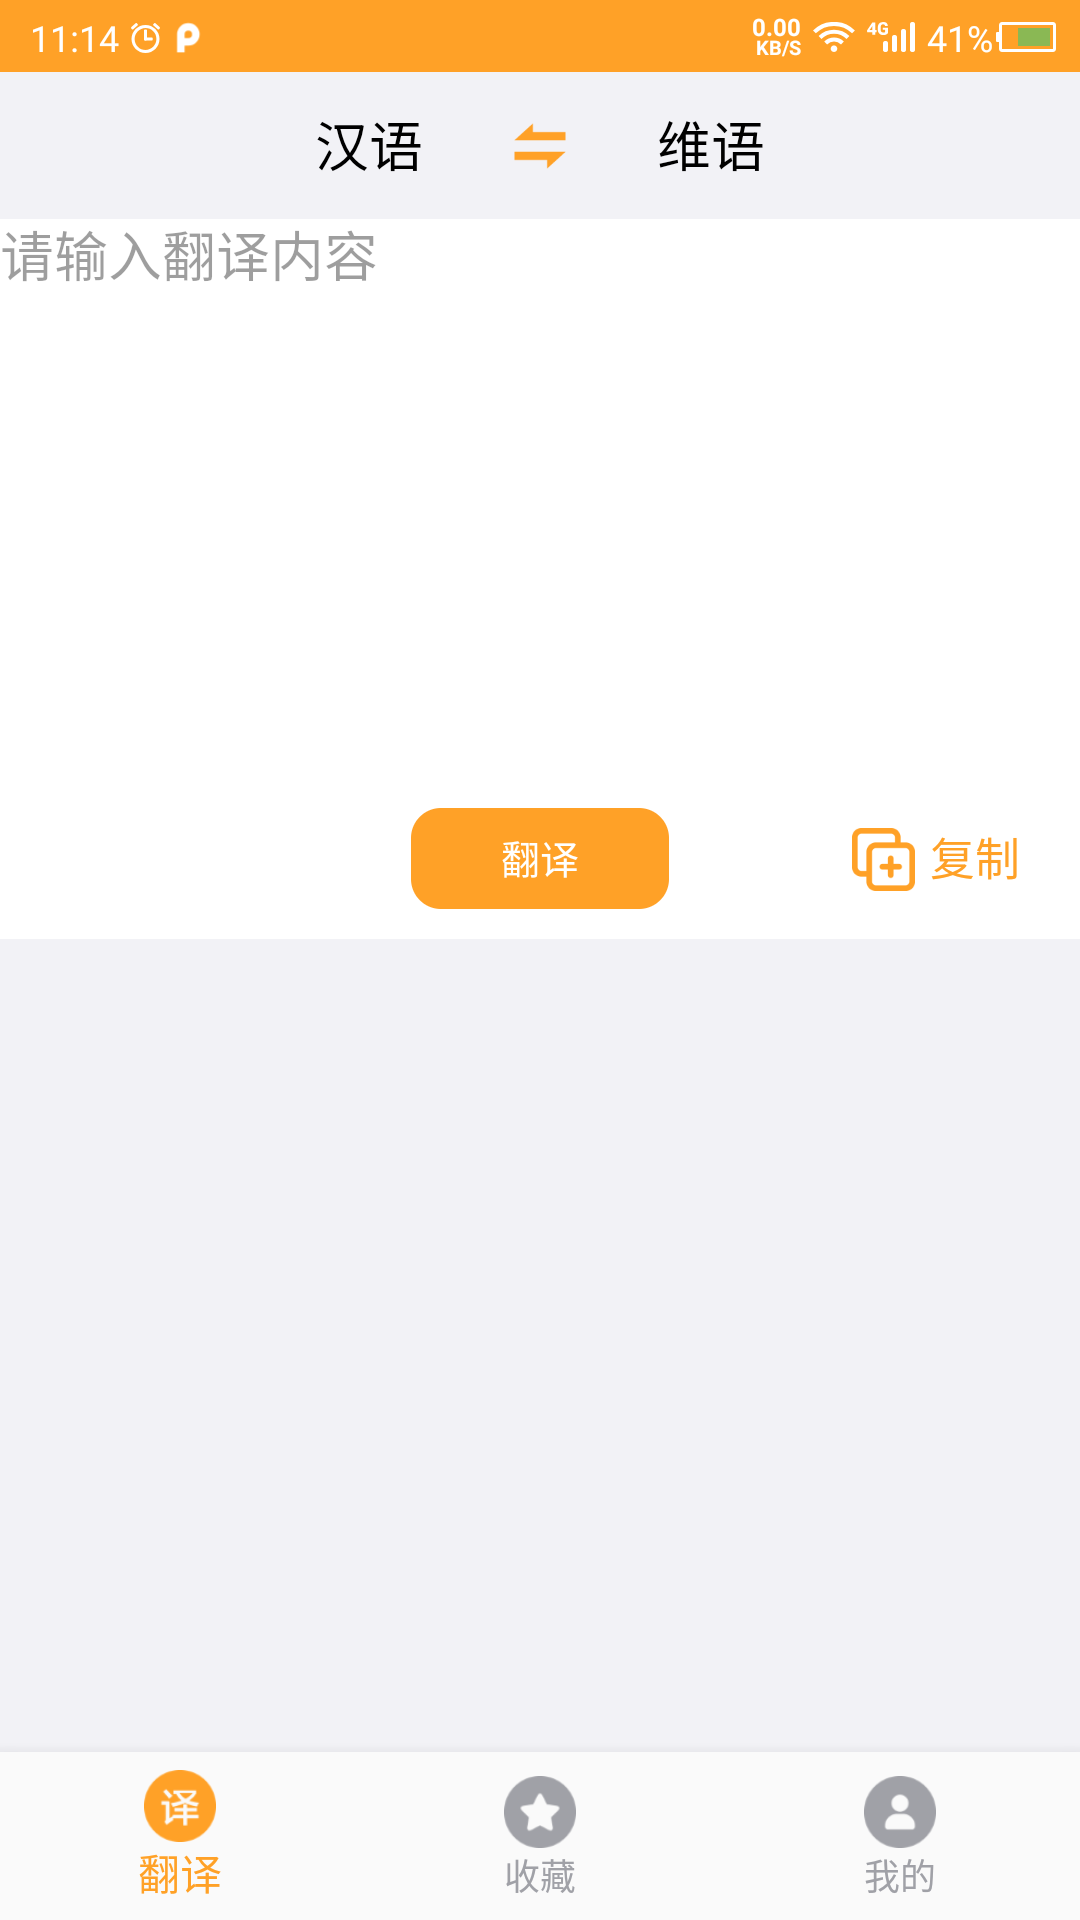 维吾尔语翻译app官方版v22.10.26 安卓版